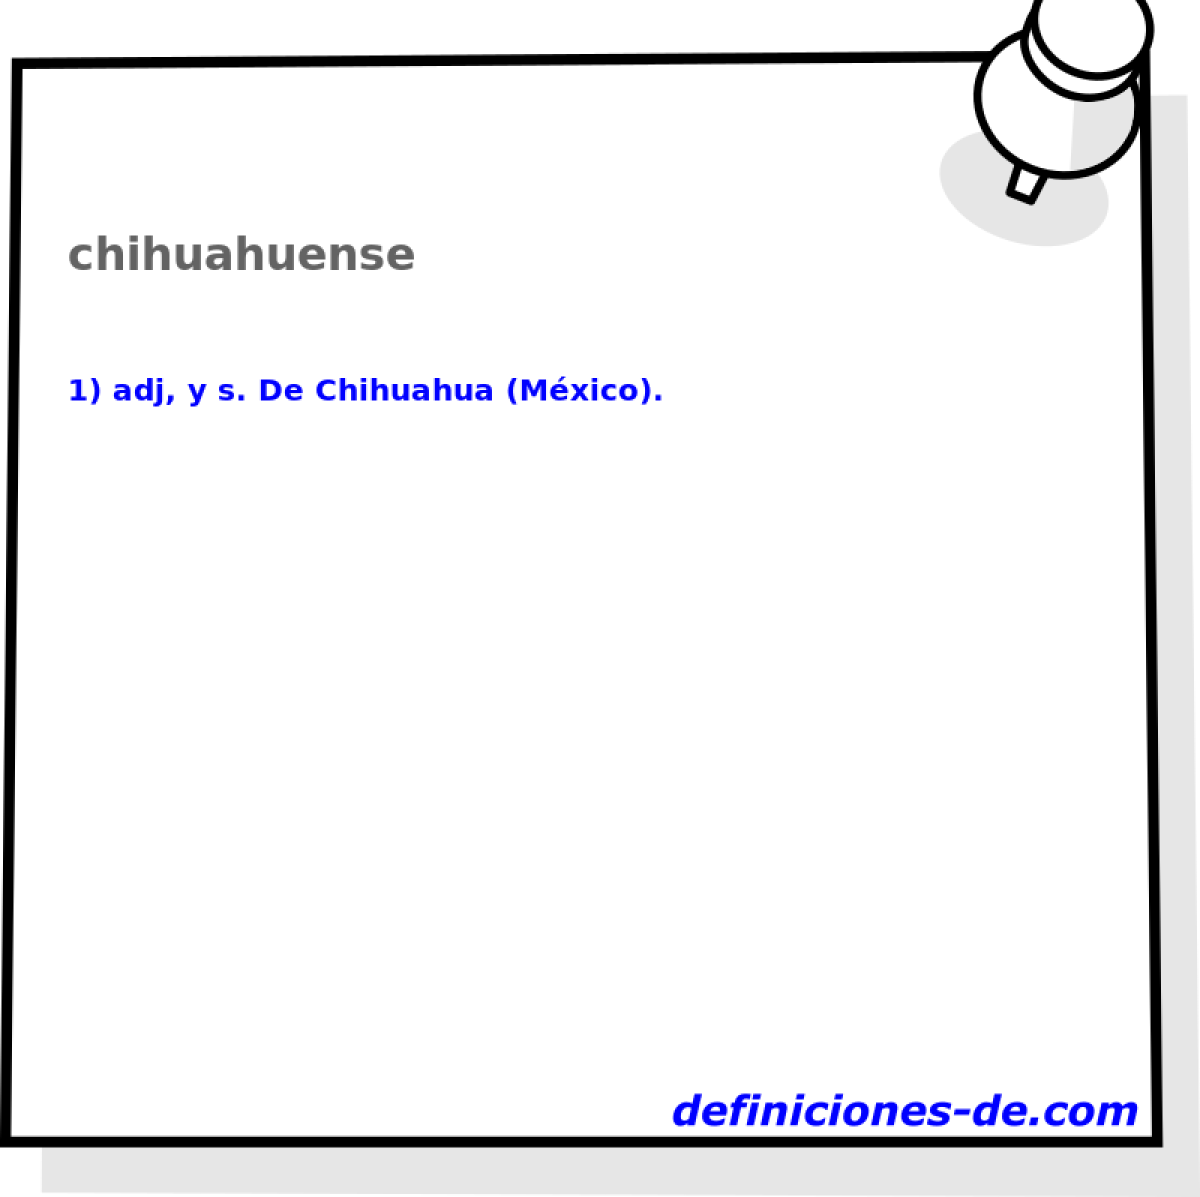 chihuahuense 